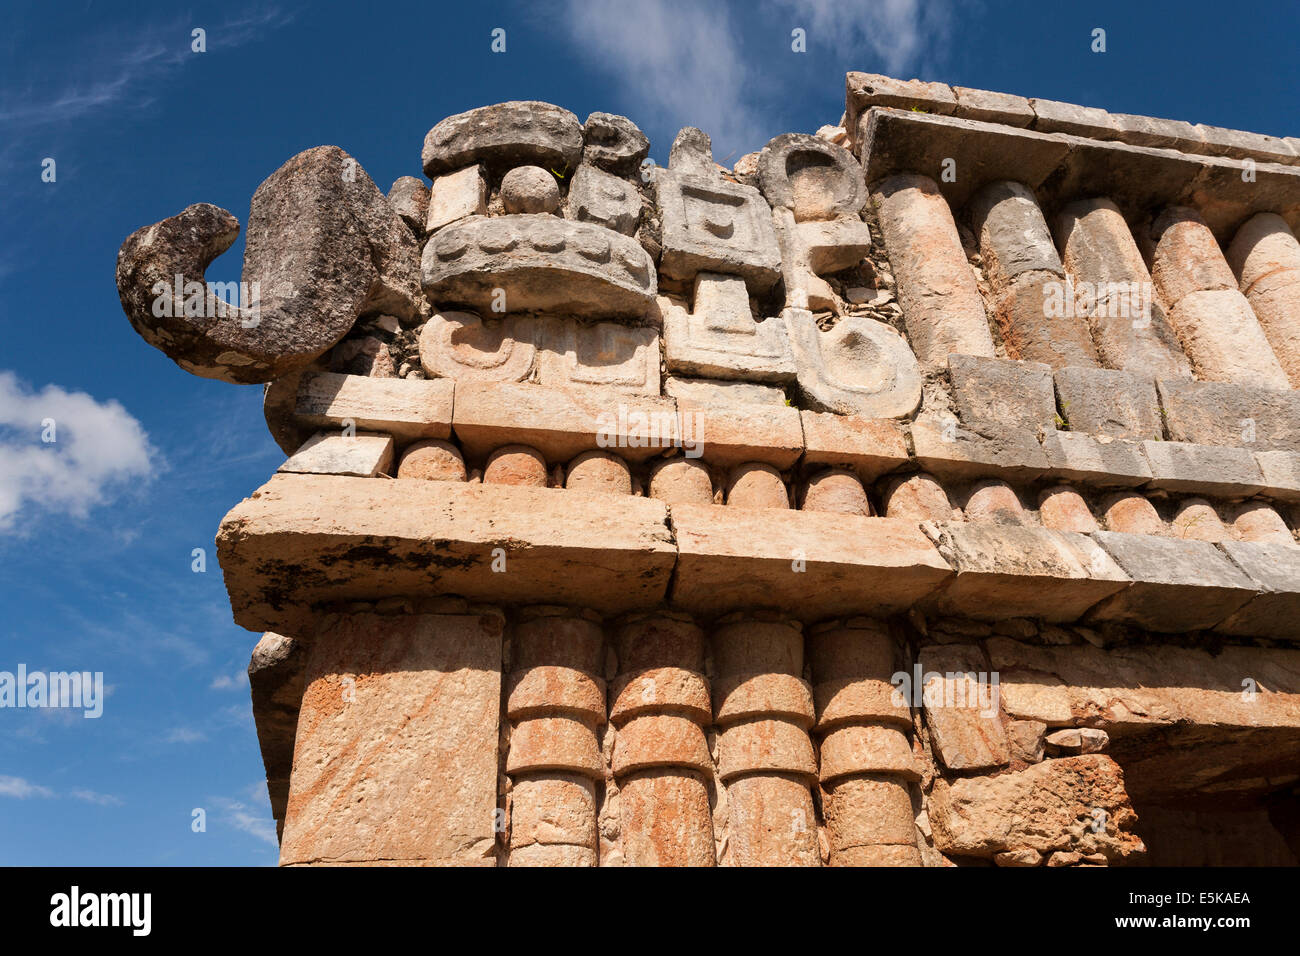 Elefant Rüssel wie-Nase an der Ecke eines Gebäudes Sayil. Eine Rekonstruktion enthält eine grobe Nase von einer Chaac-Maske im Mais Stockfoto